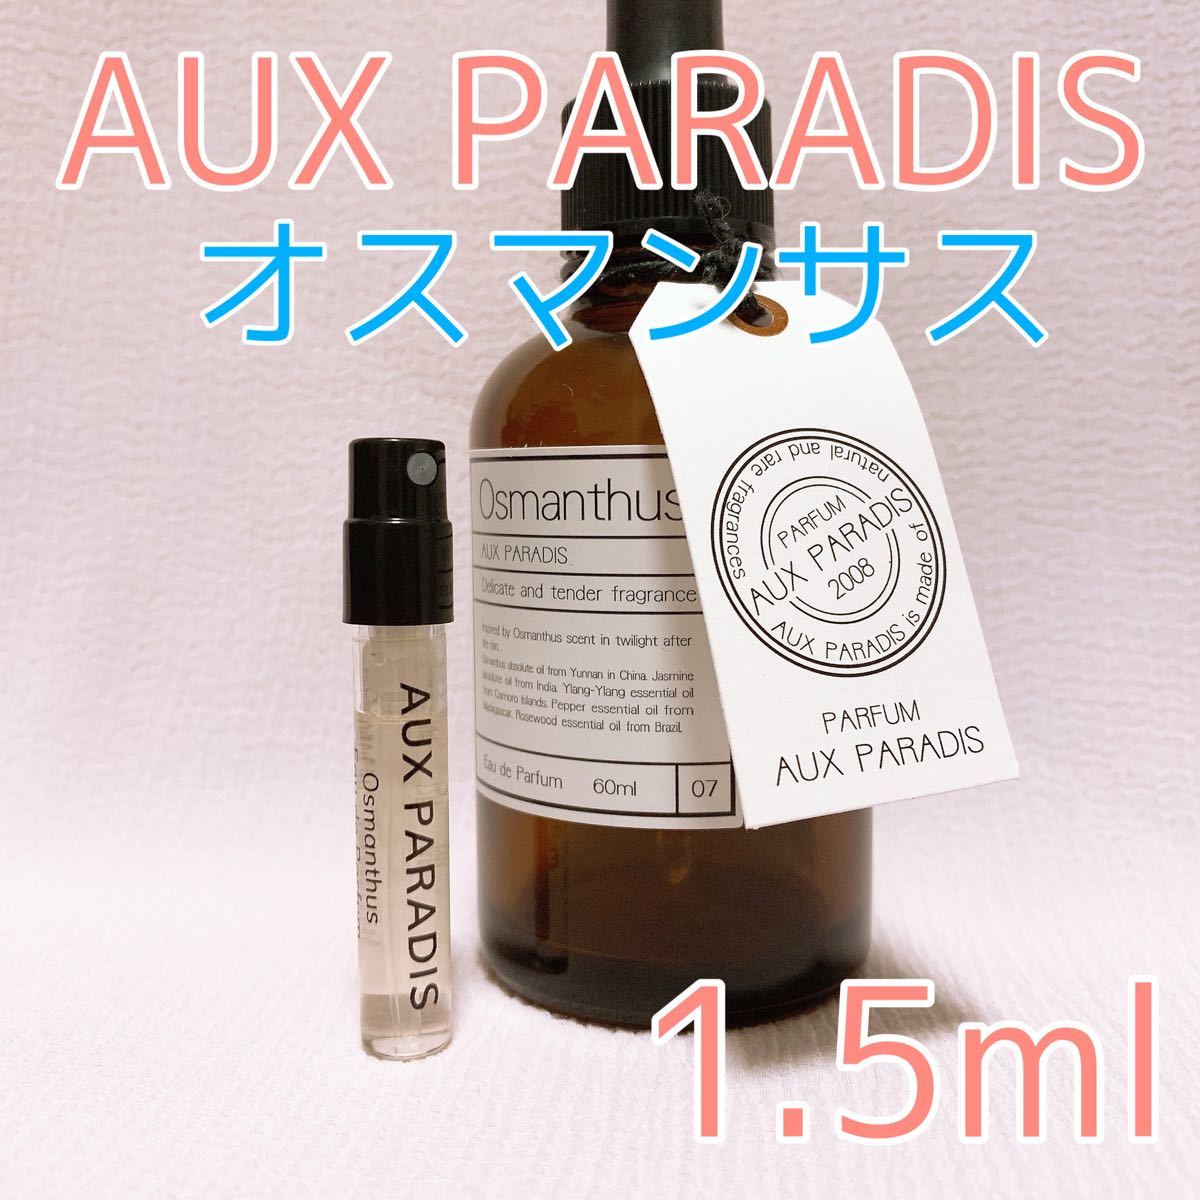 オゥパラディ オスマンサス 香水 パルファム 1.5ml